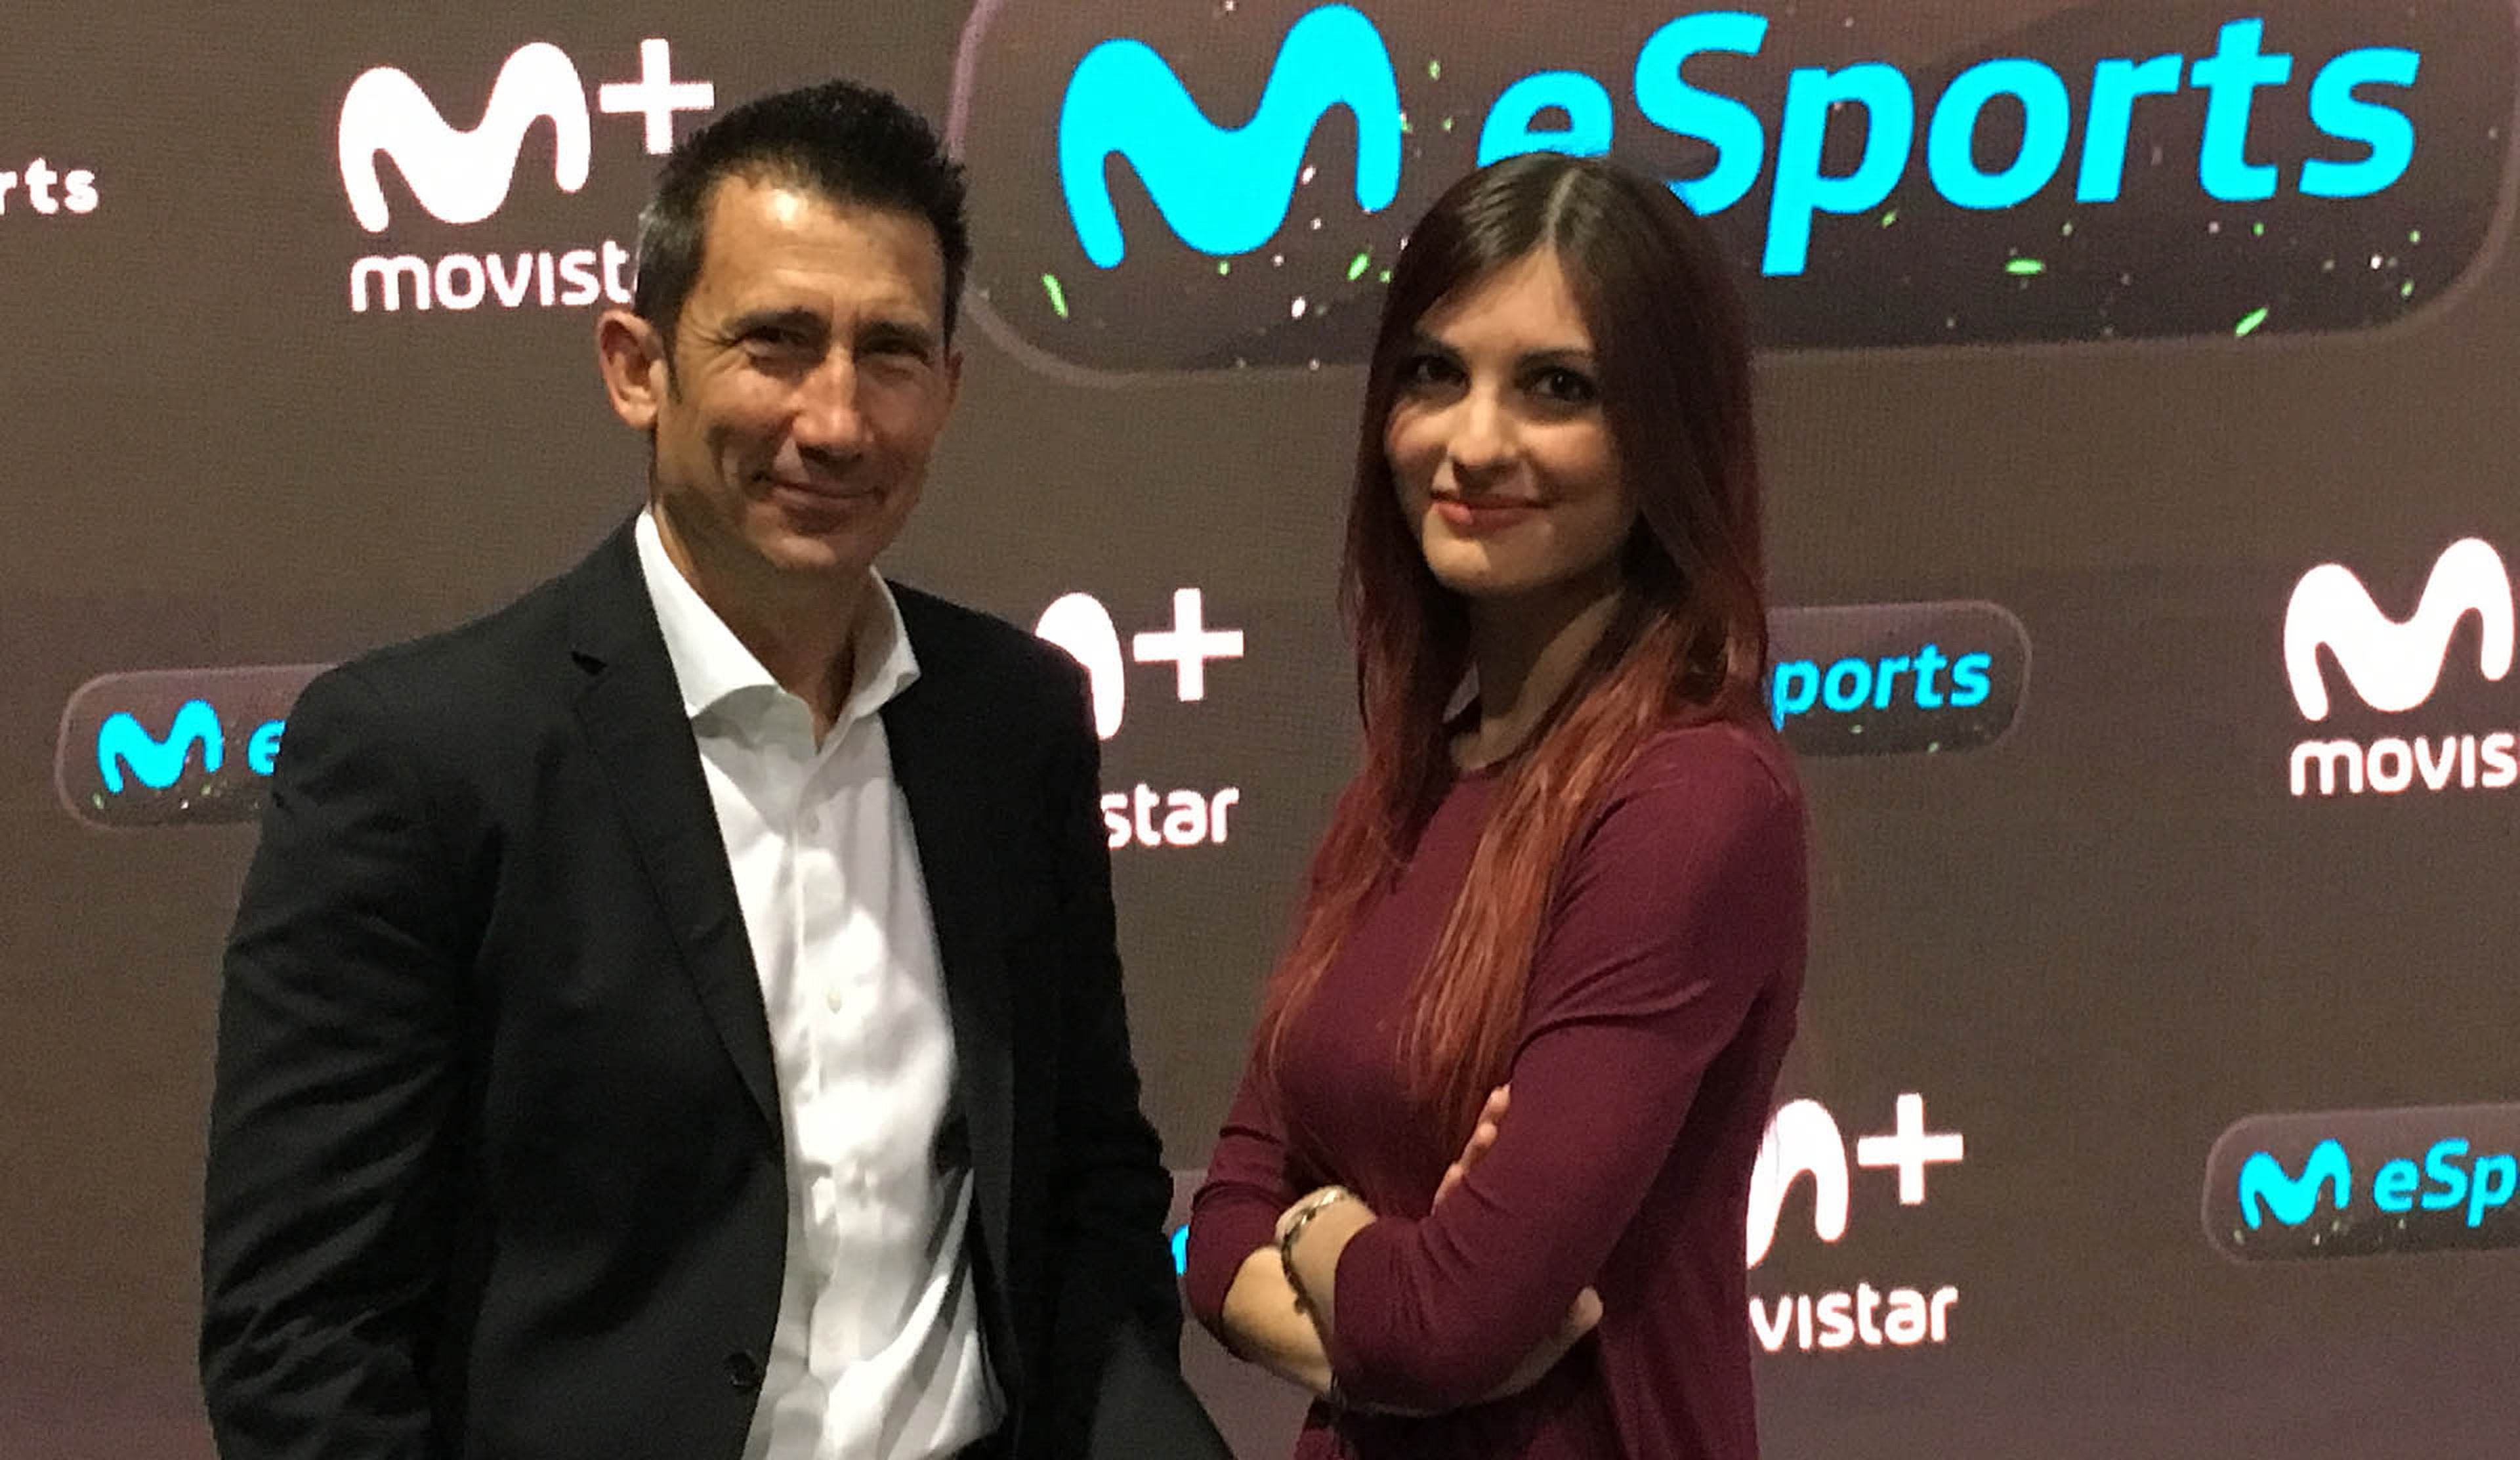 Movistar eSports entrevista